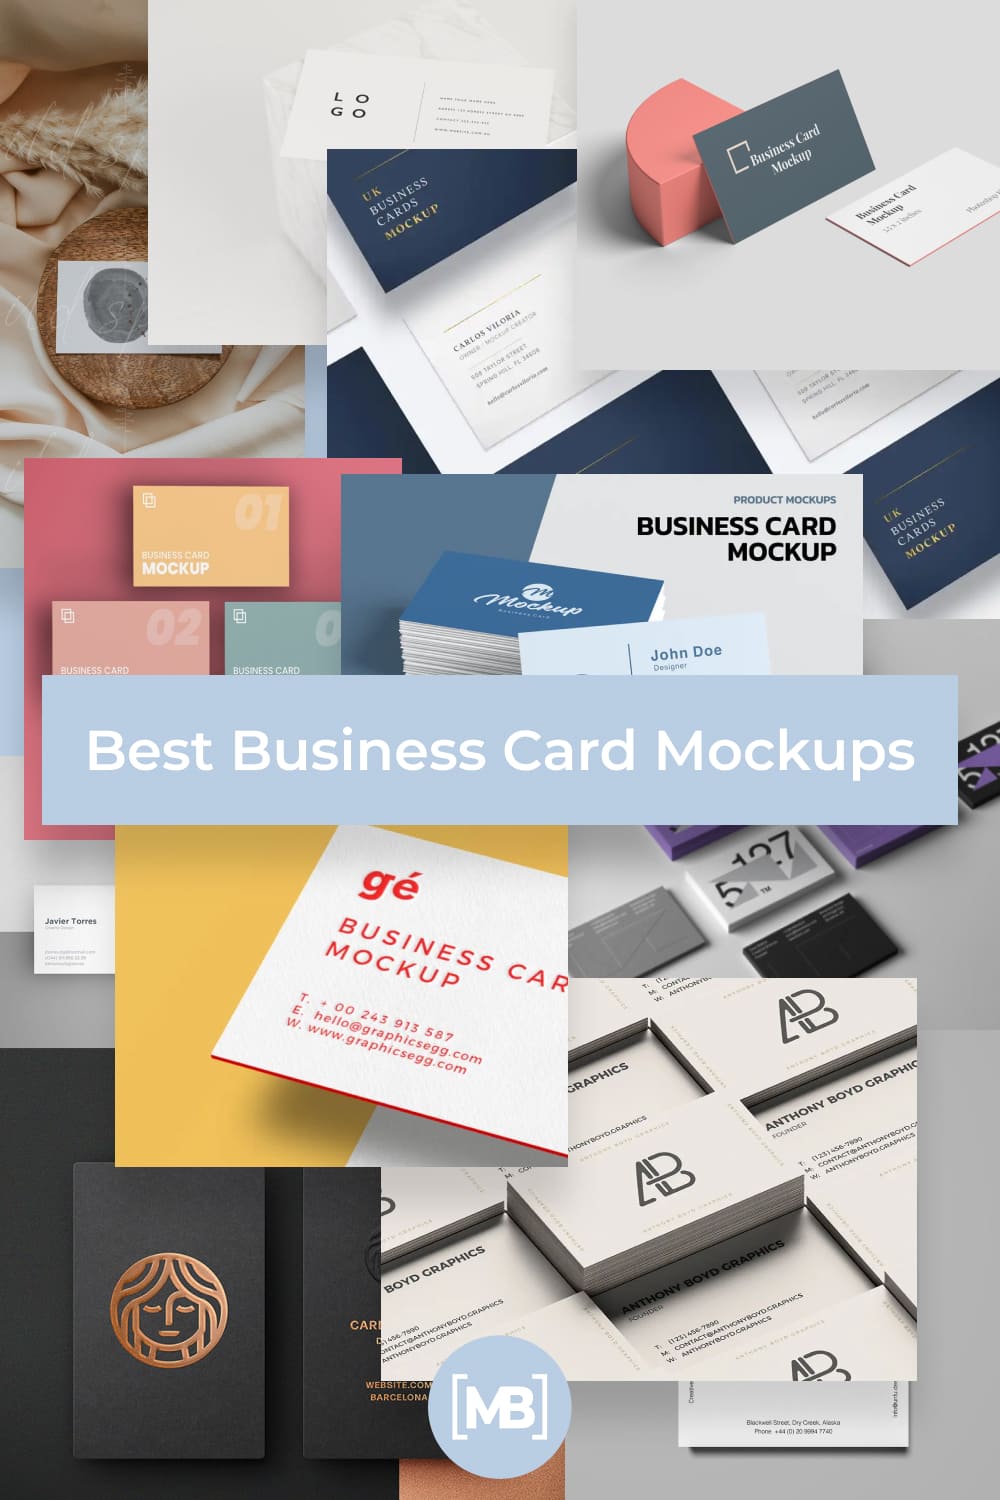 Business Card Mockups Pinterest.